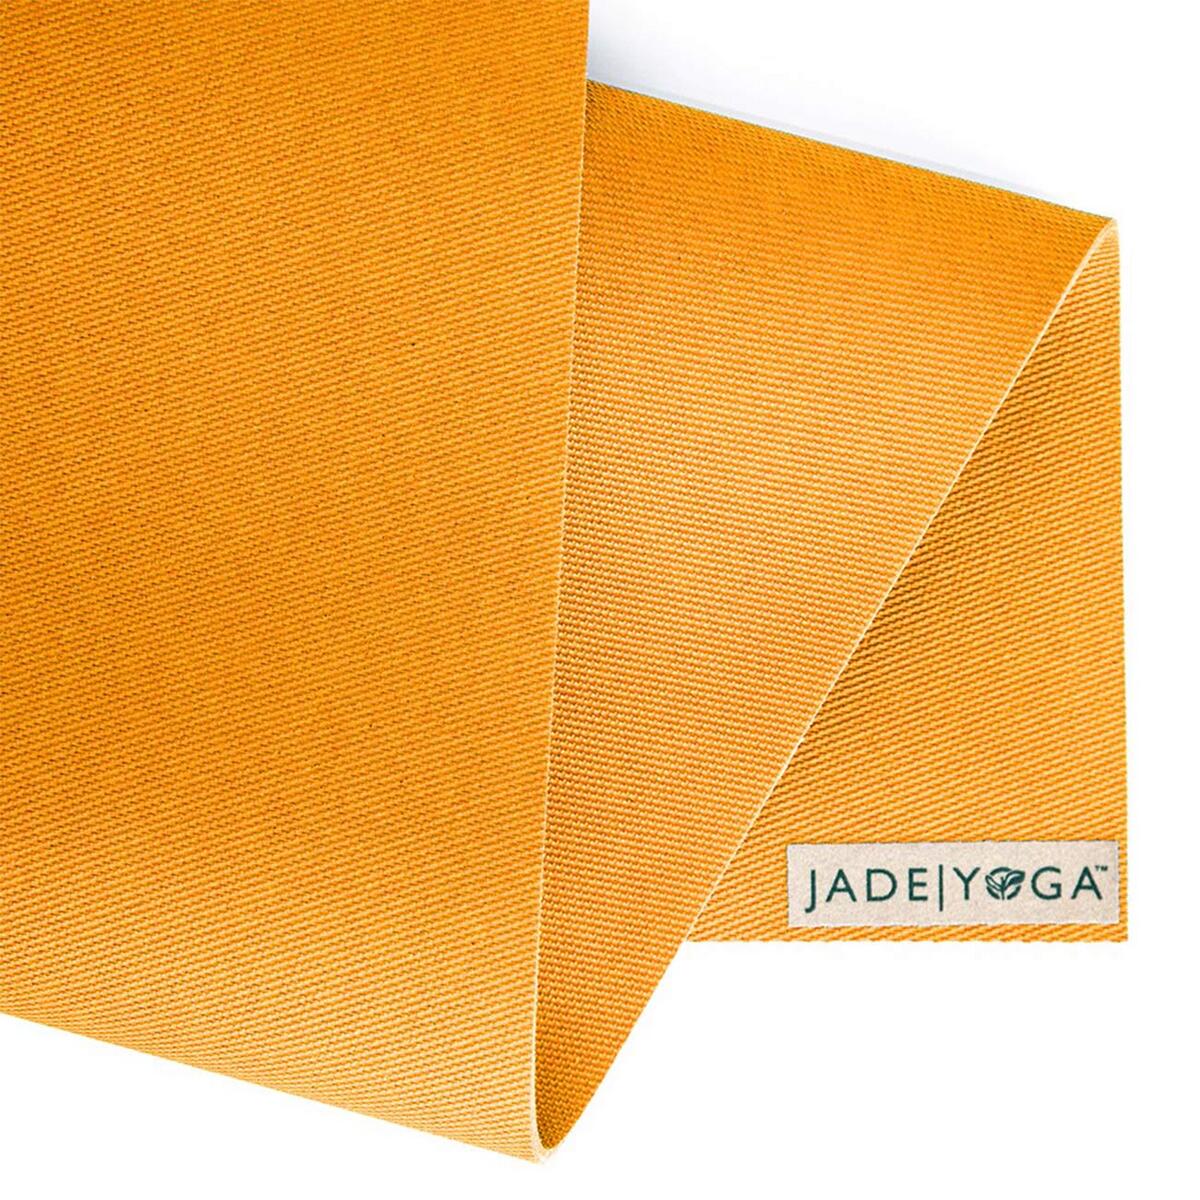 JadeYoga - Jadeyoga Harmony Professional Mat